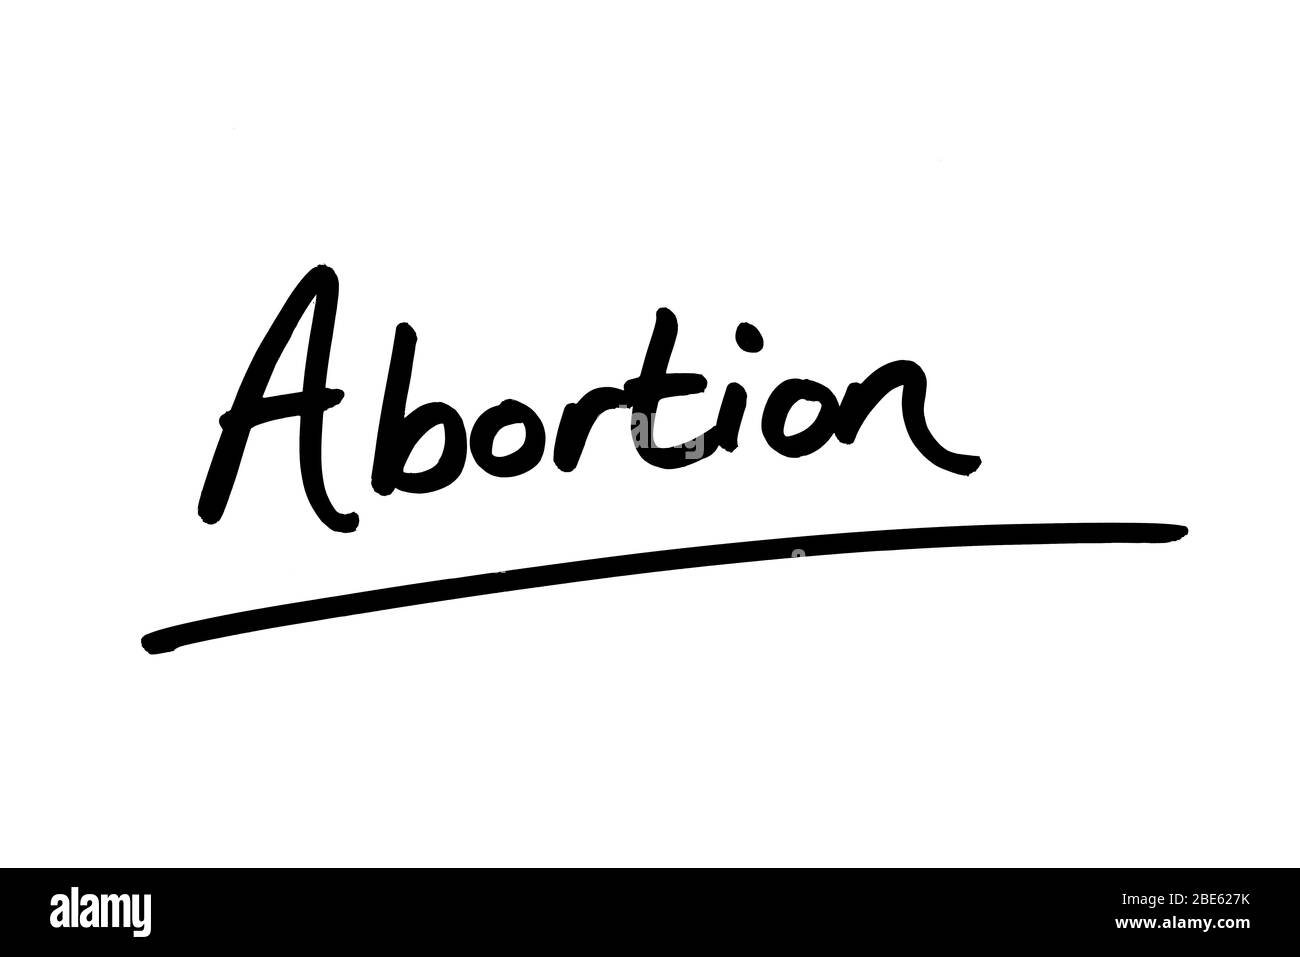 Le mot avortement est écrit à la main sur un fond blanc. Banque D'Images